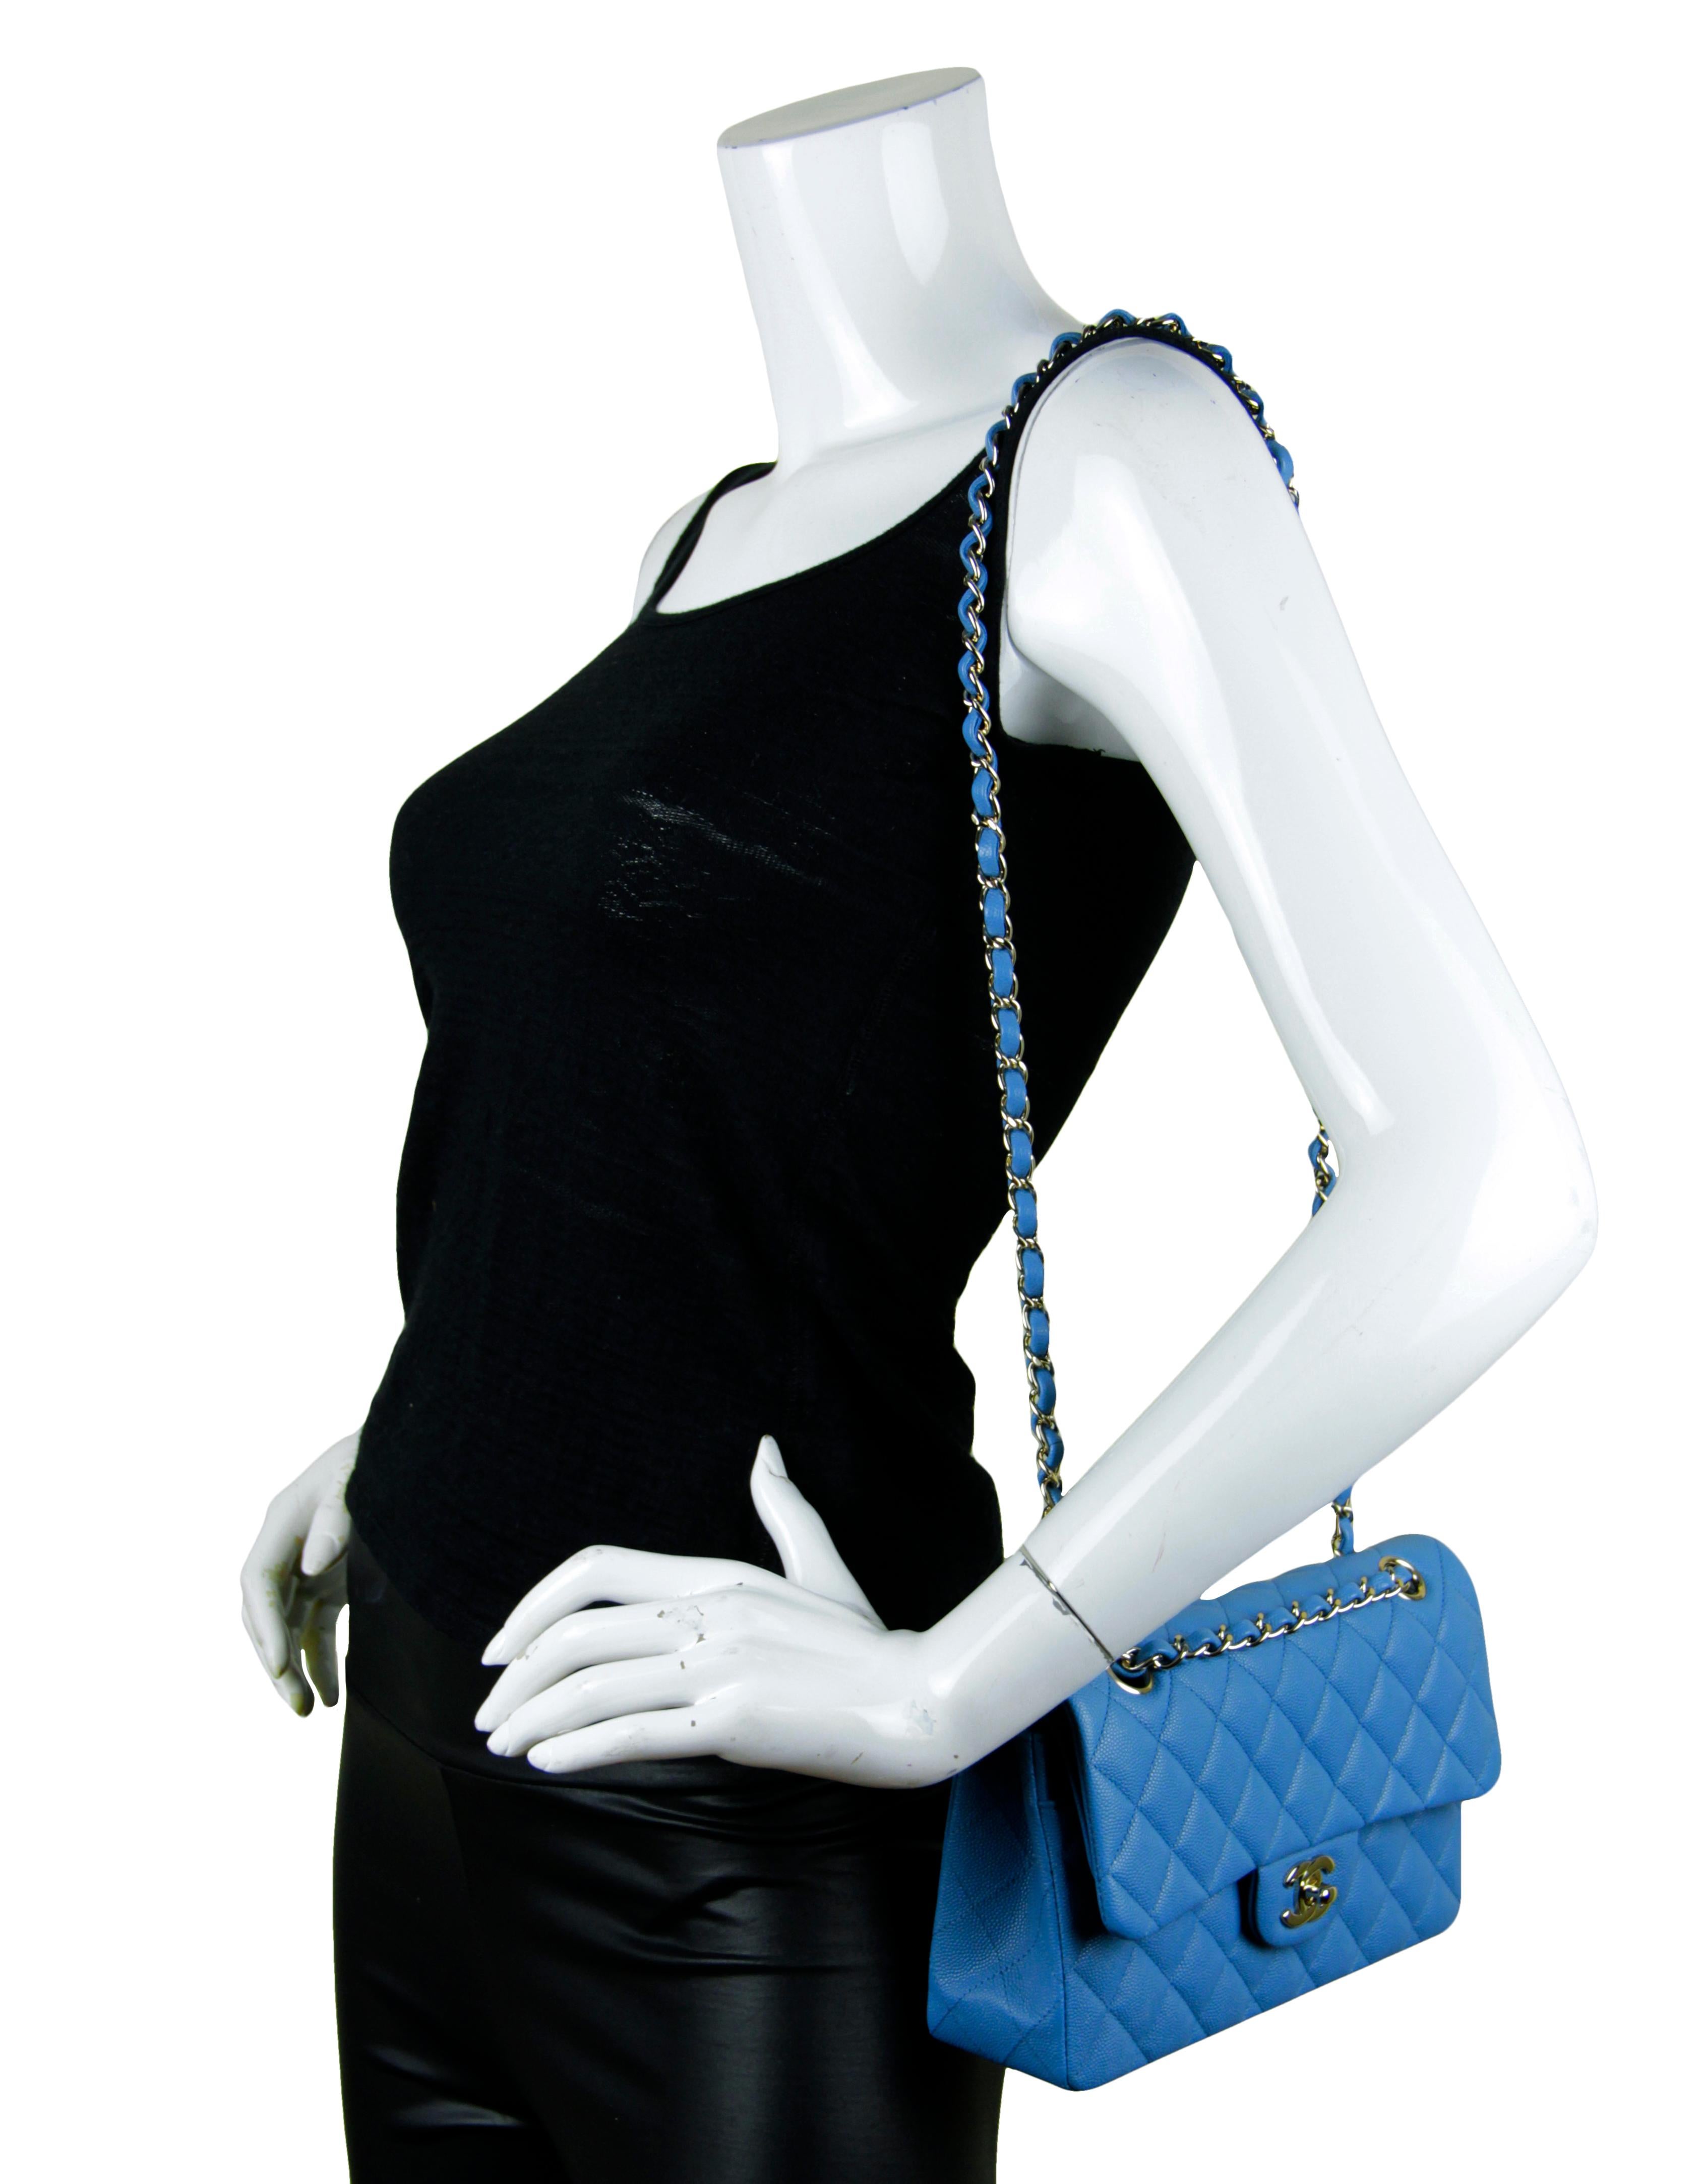 Chanel Blau Kaviar Leder Gesteppte Kleine Doppelte Klappe Klassische Tasche

Hergestellt in: Frankreich
Produktionsjahr: 2021
Farbe: Blye
Hardware: Goldtone
MATERIALIEN: Kaviar Leder
Innenfutter: Blaues Leder
Verschluss/Öffnung: Obere Klappe mit